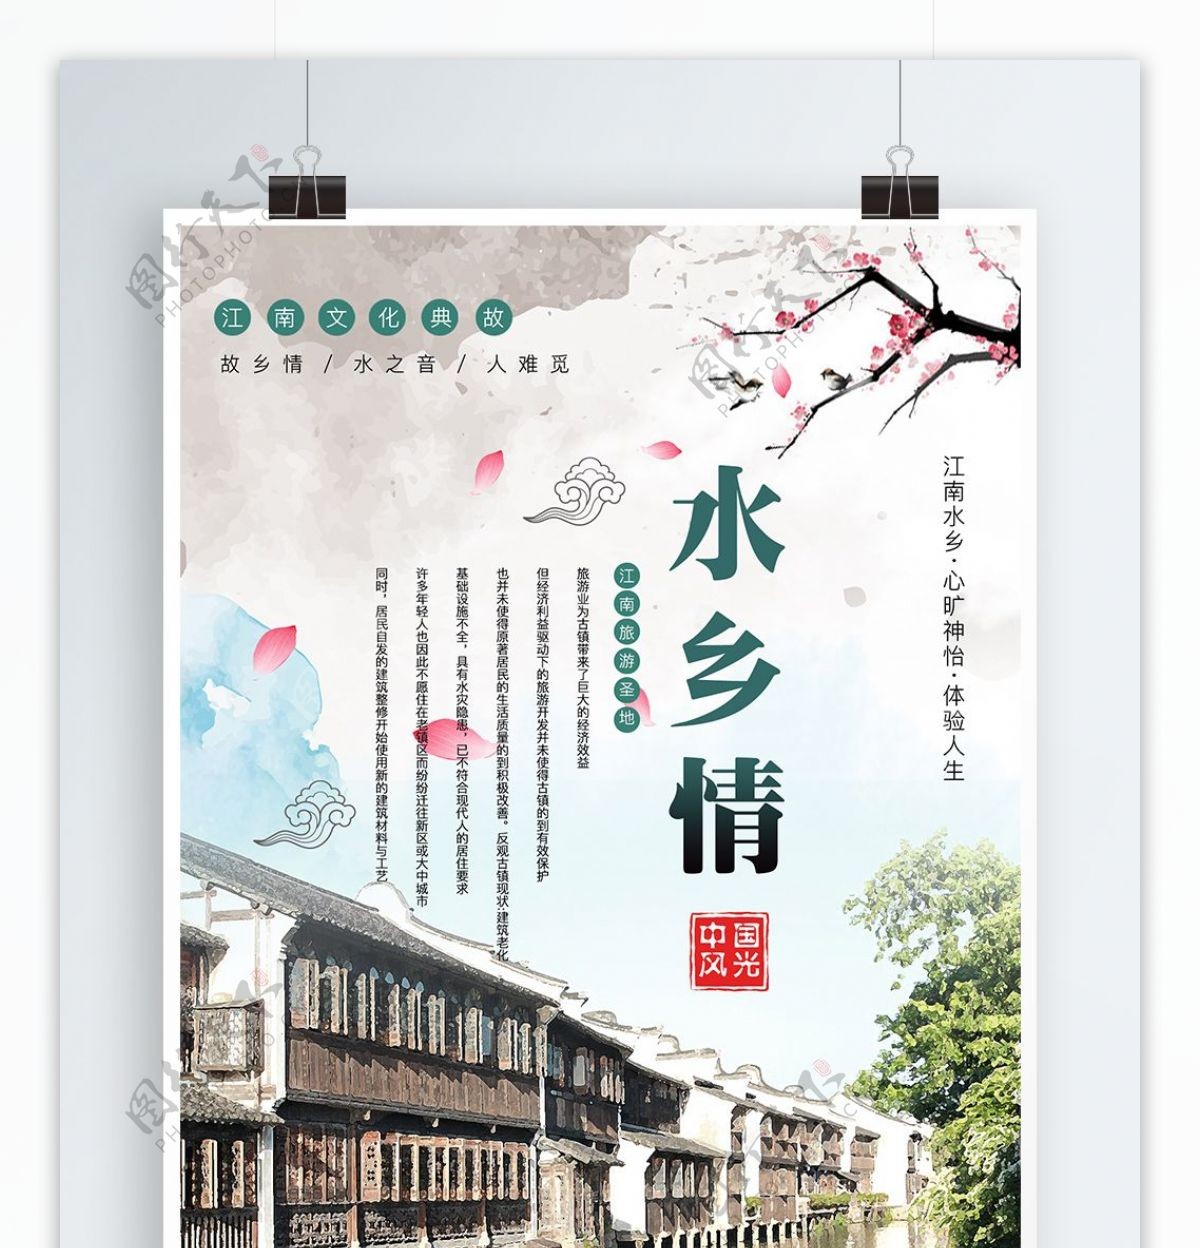 中国风江南水乡旅游海报